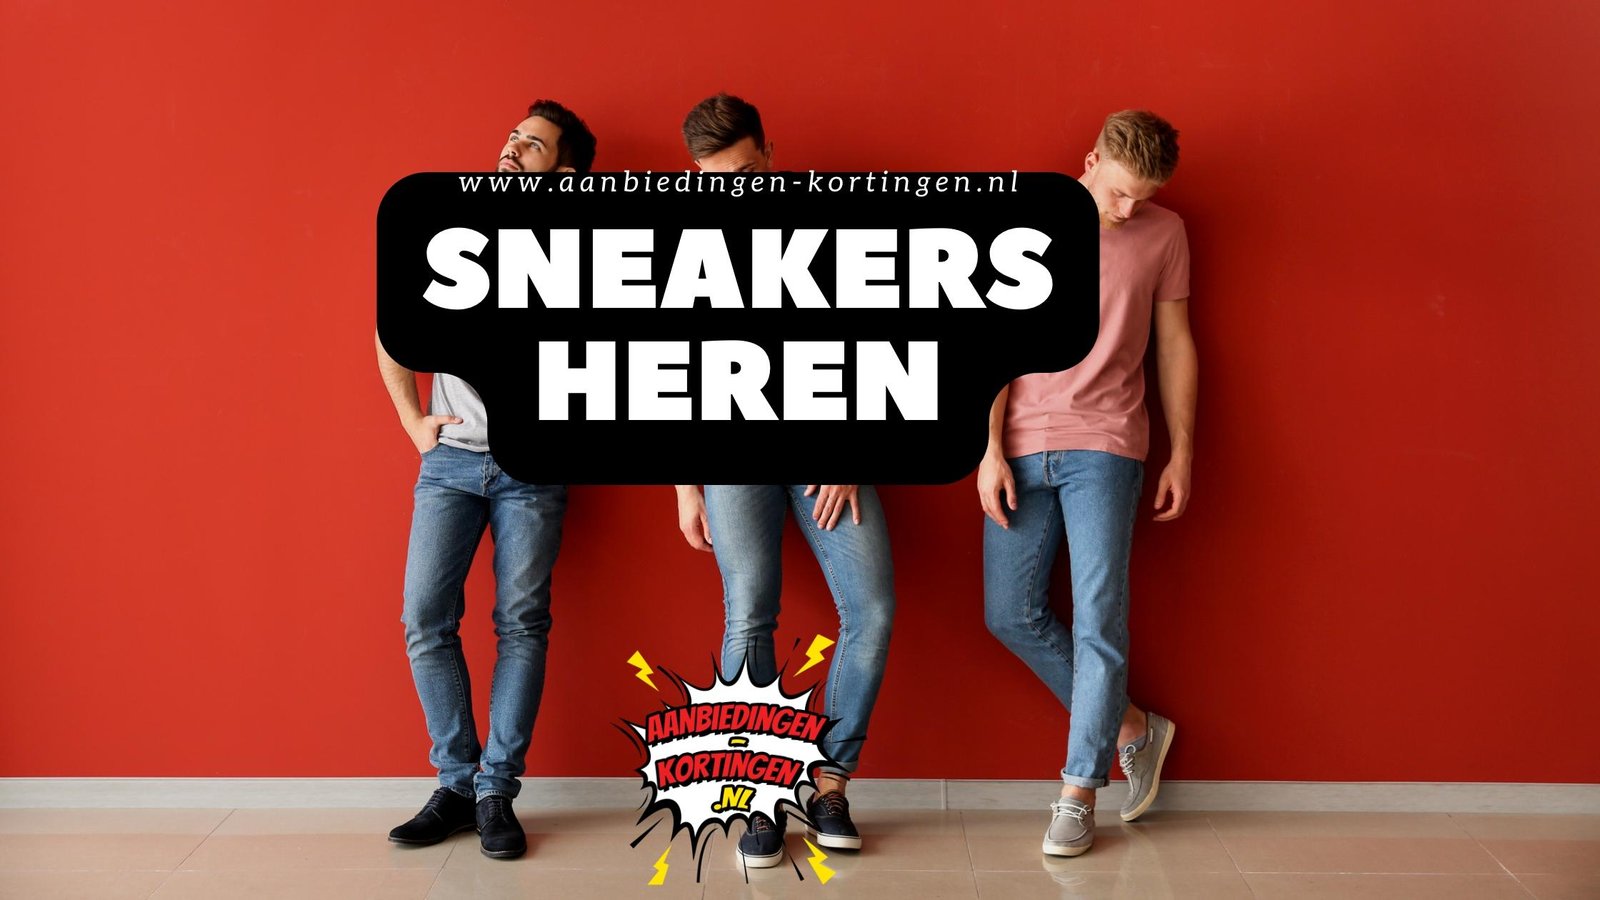 Rubber Expertise Zijn bekend Sneakers heren aanbiedingen Category - Aanbiedingen en Kortingen NL